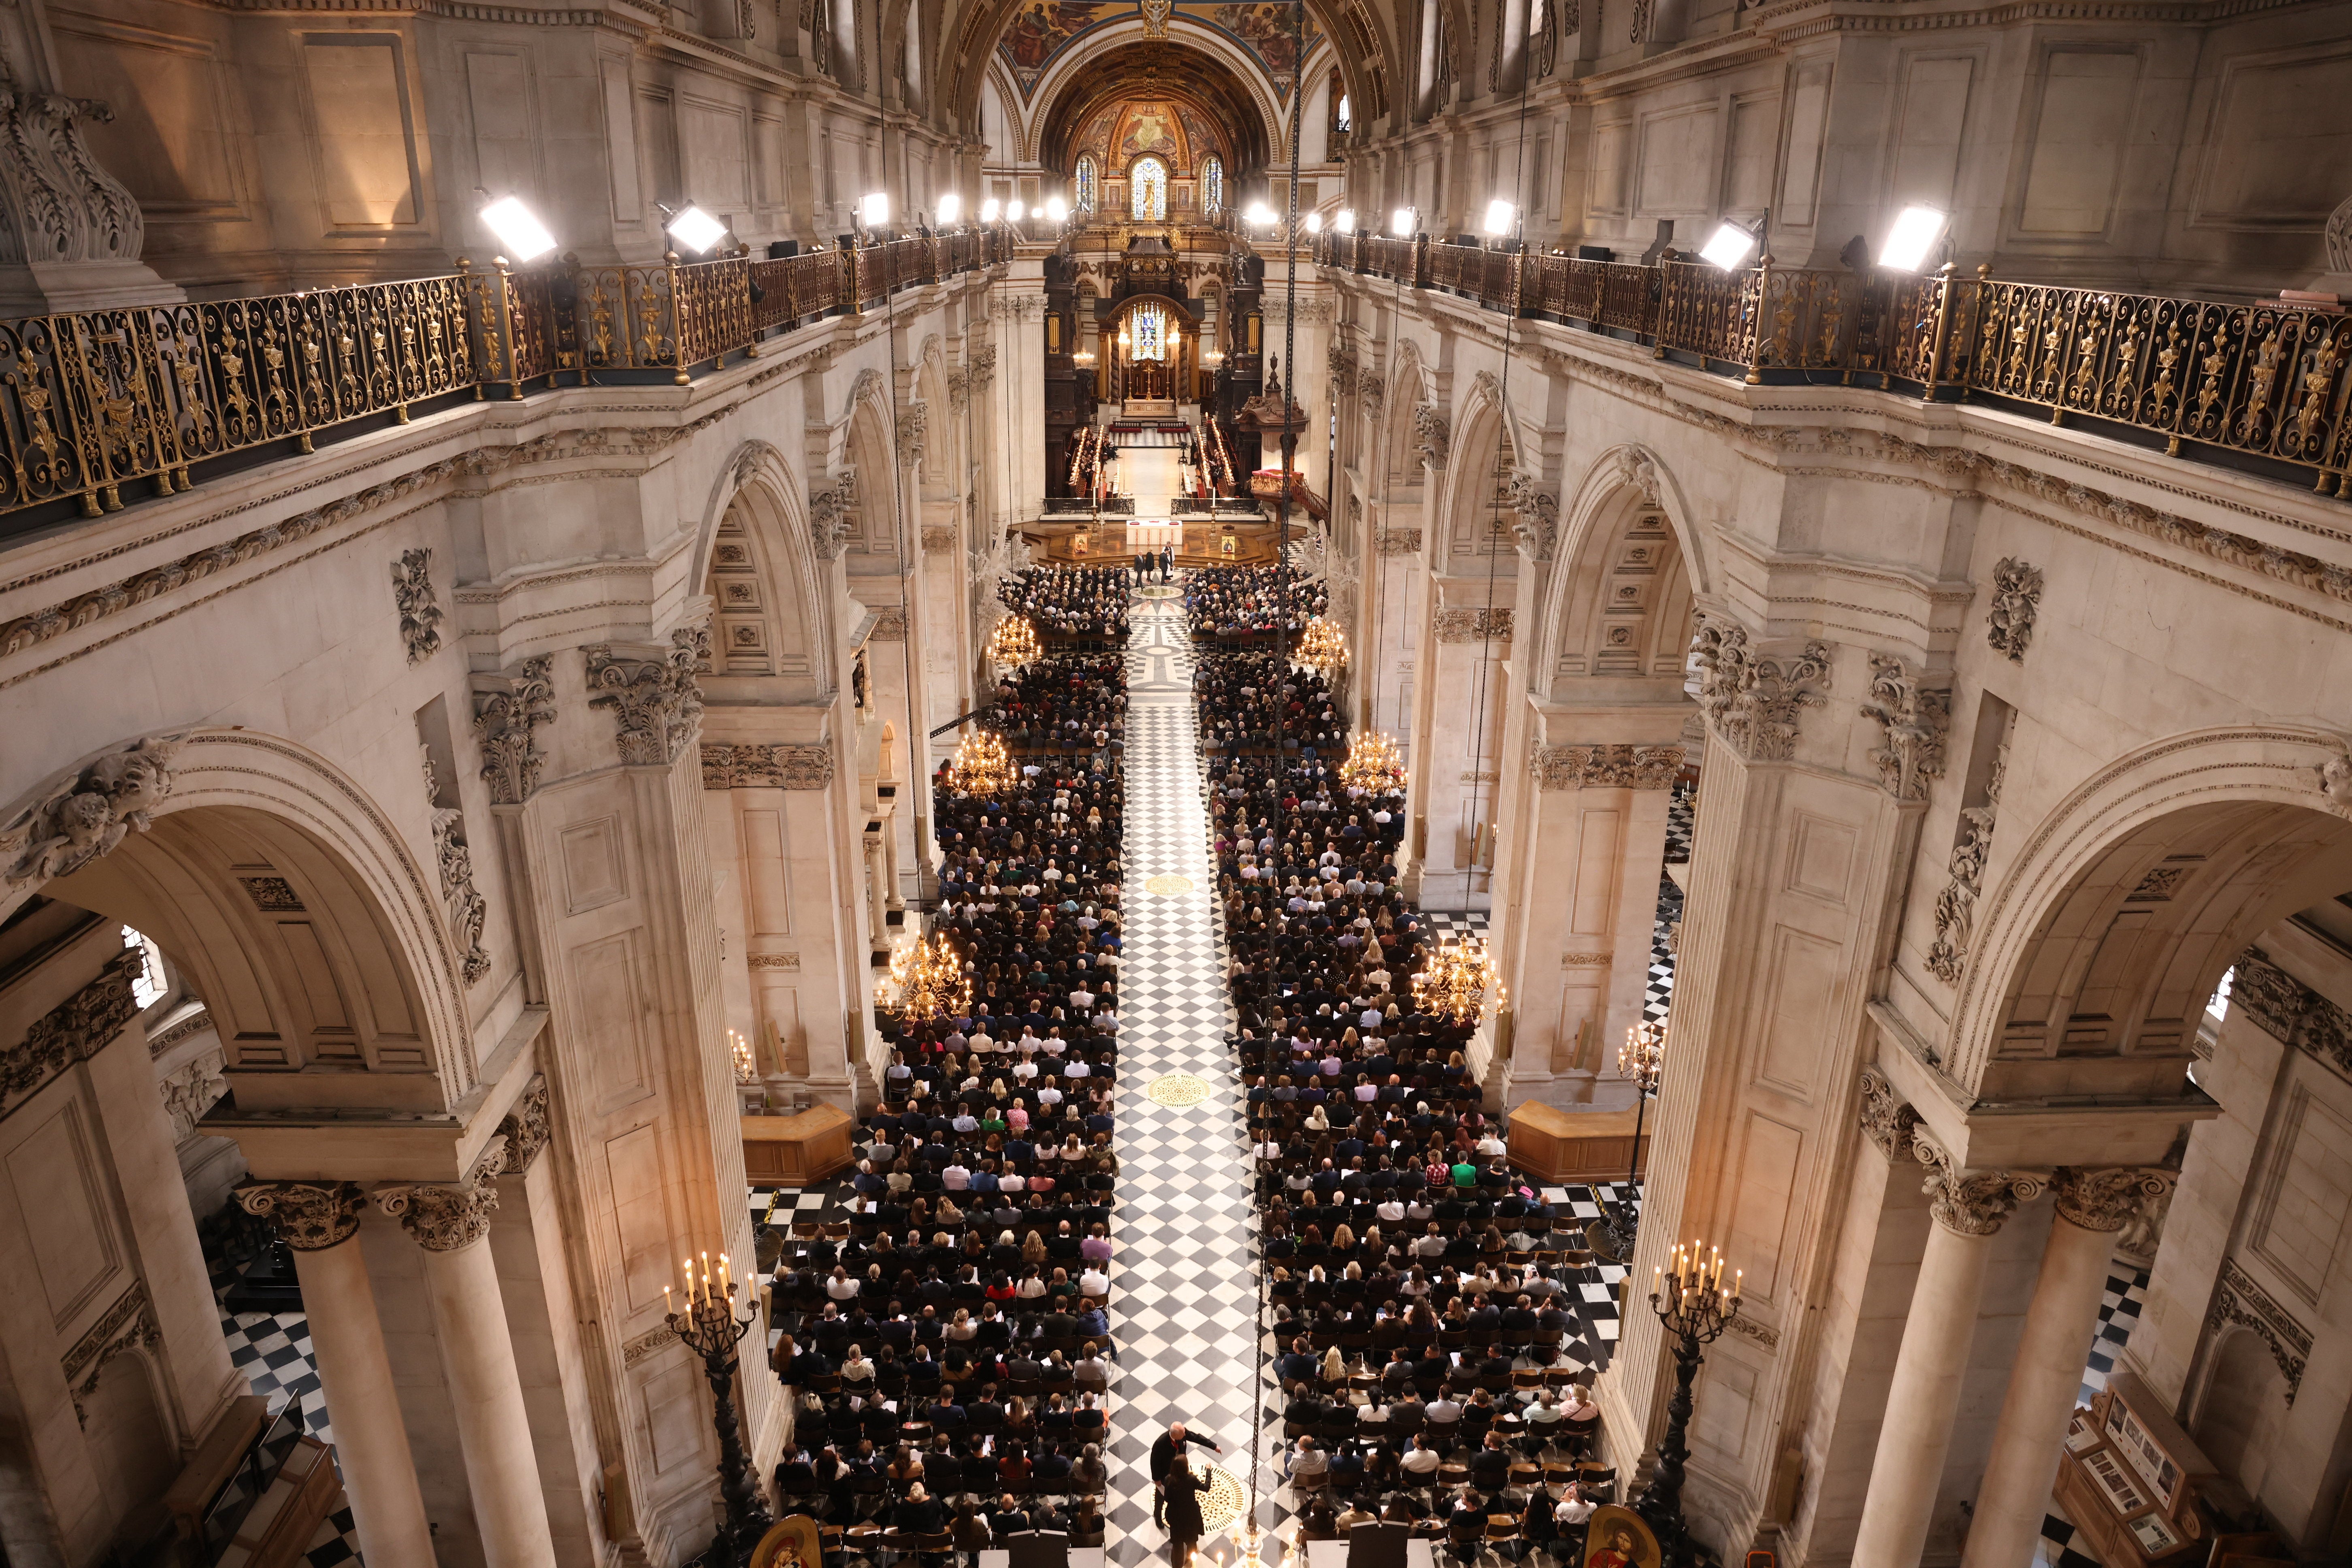 El viernes por la noche se celebró un evento religioso de oración y reflexión en la Catedral de San Pablo